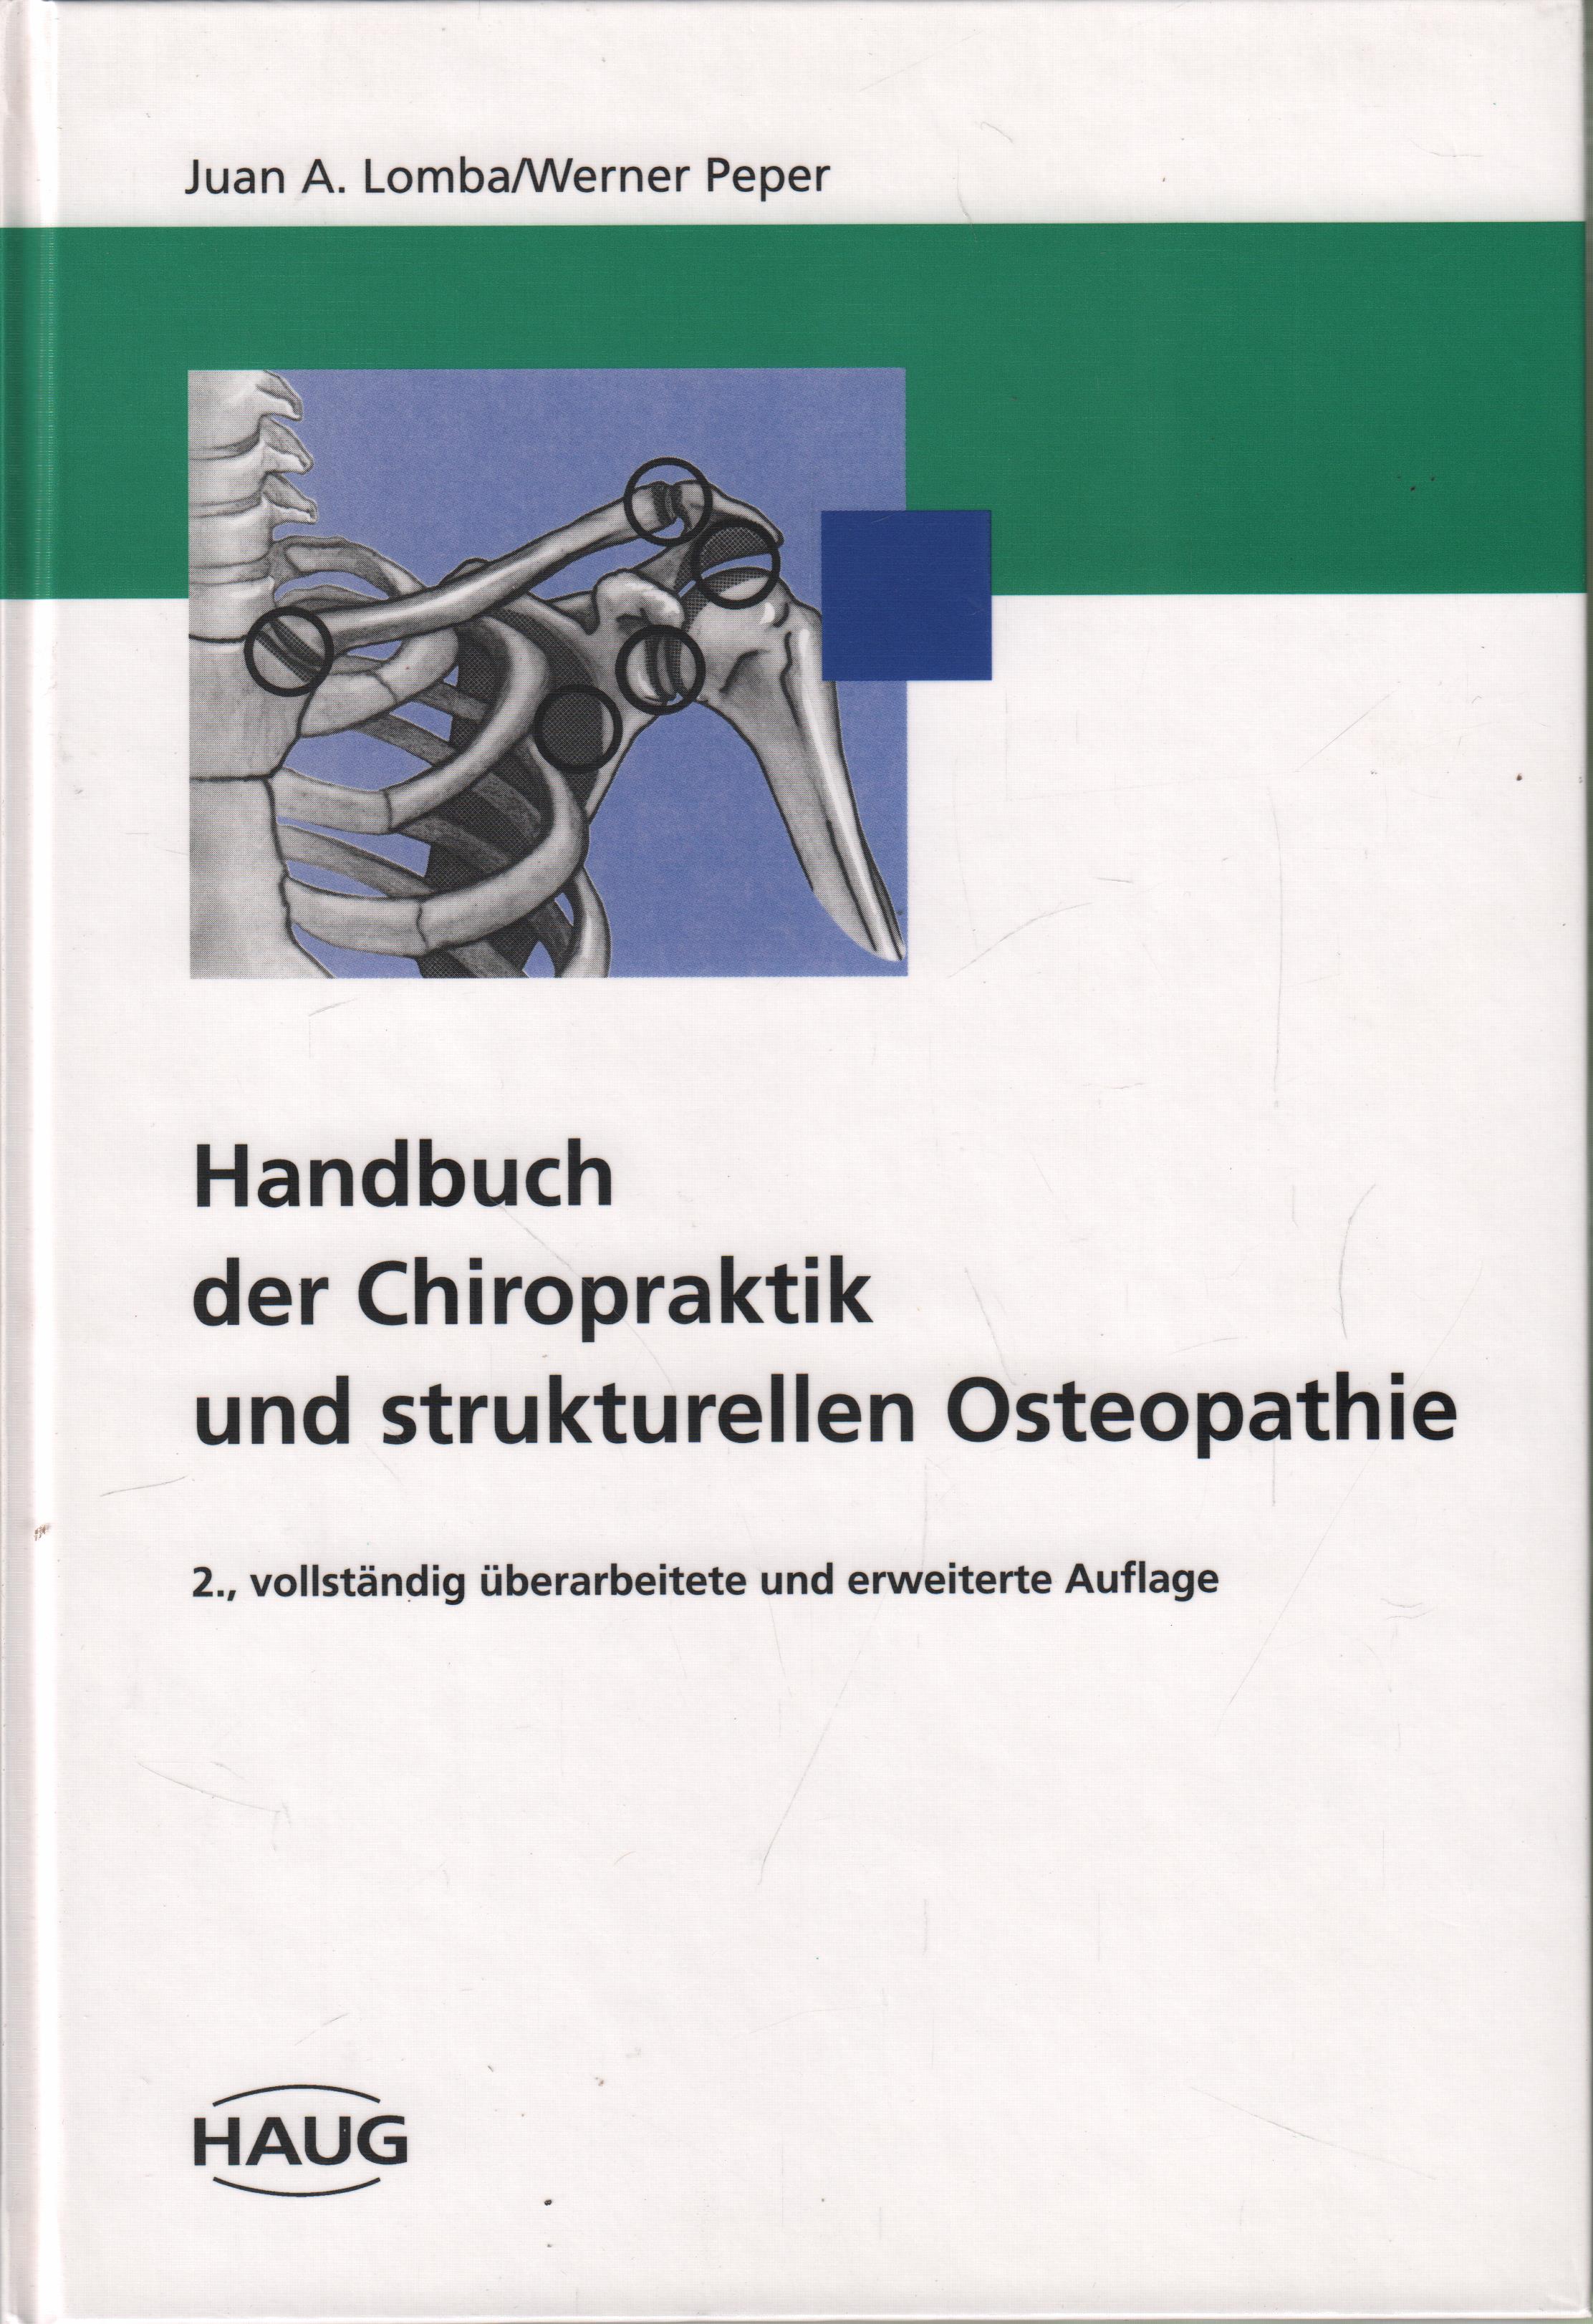 Handbuch der Chiropraktik und strukturelle Osteopathie - Lomba, Juan A. und Werner Peper